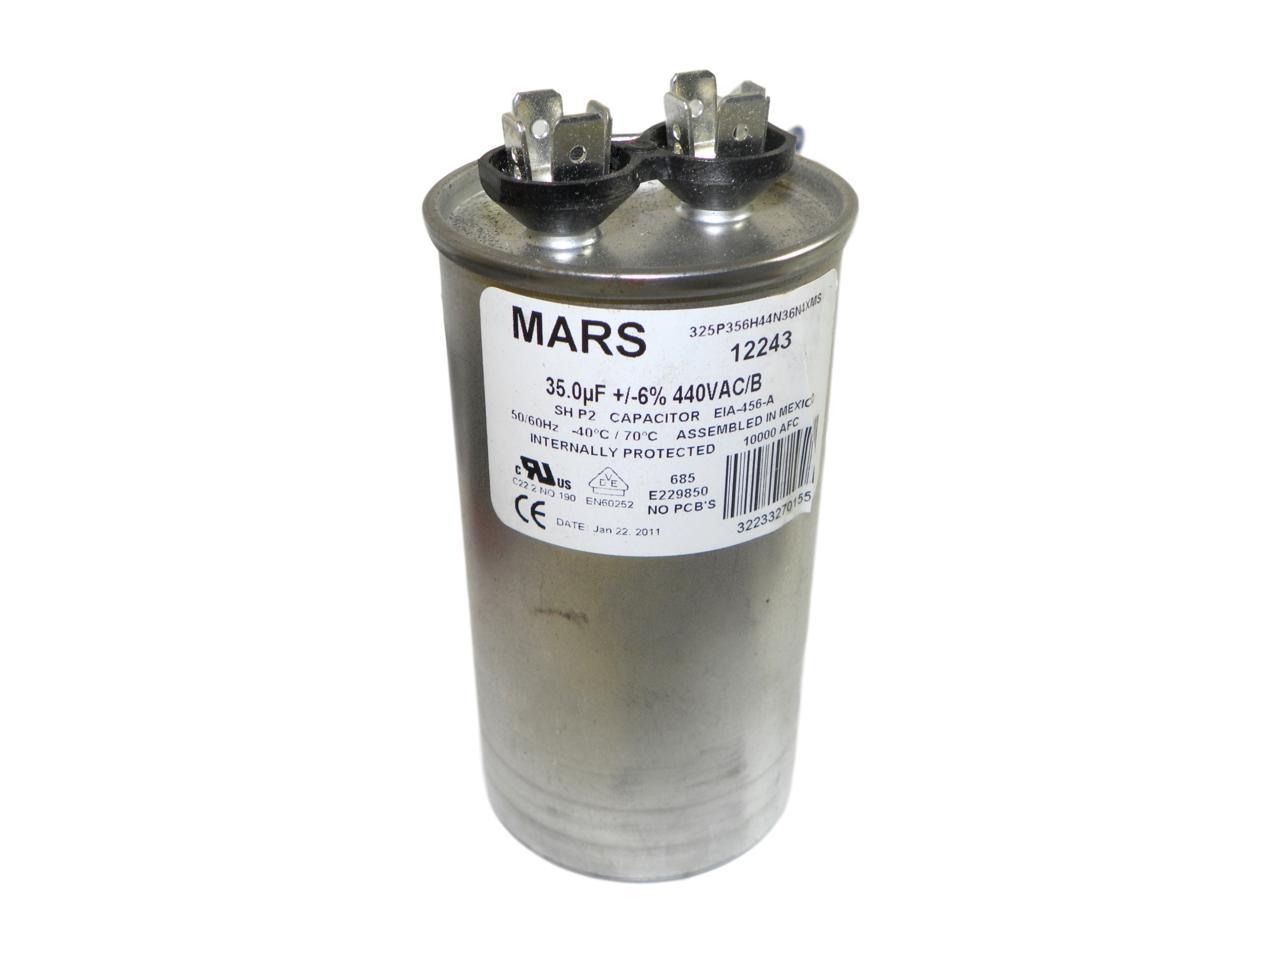 Mars - Capacitor 35 MFD 440V